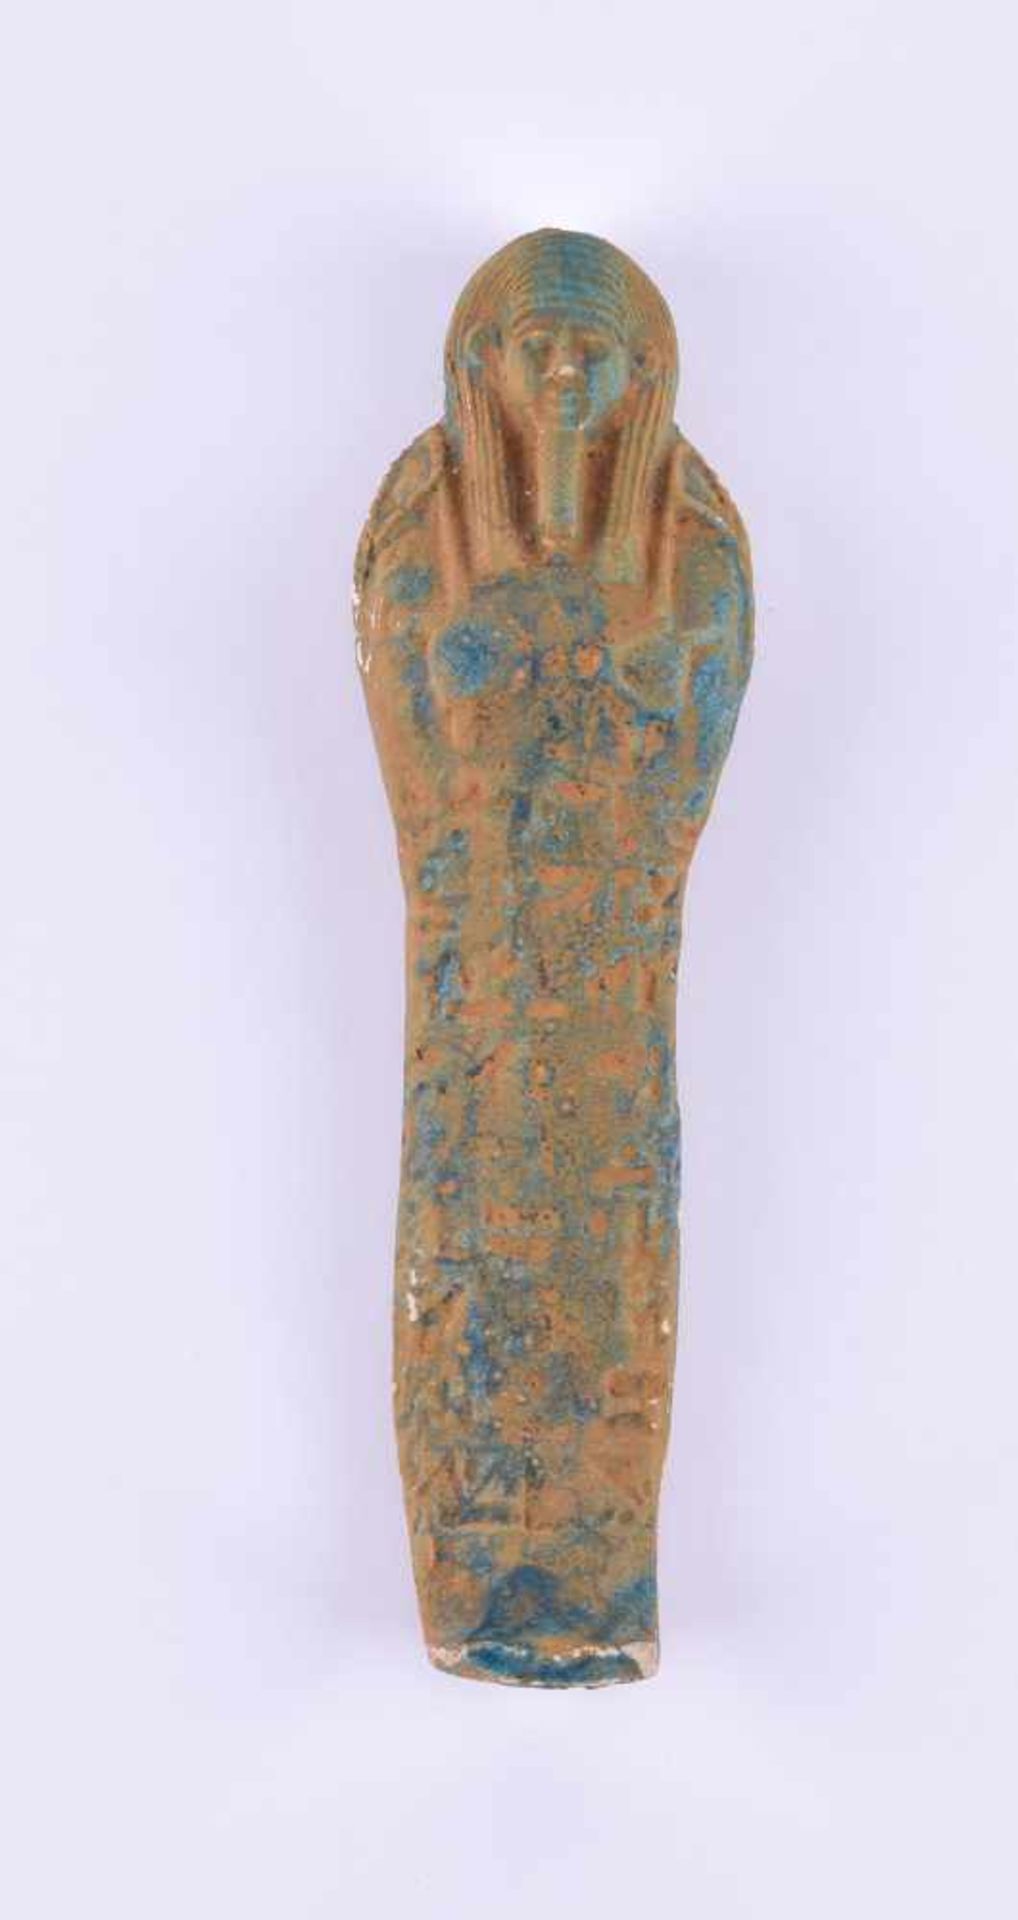 Uschepti Spätzeit, 26-30. Dynastie 664-332 v.Chr.Fayance, L: 15,5 cmUschepti late period 26-30.